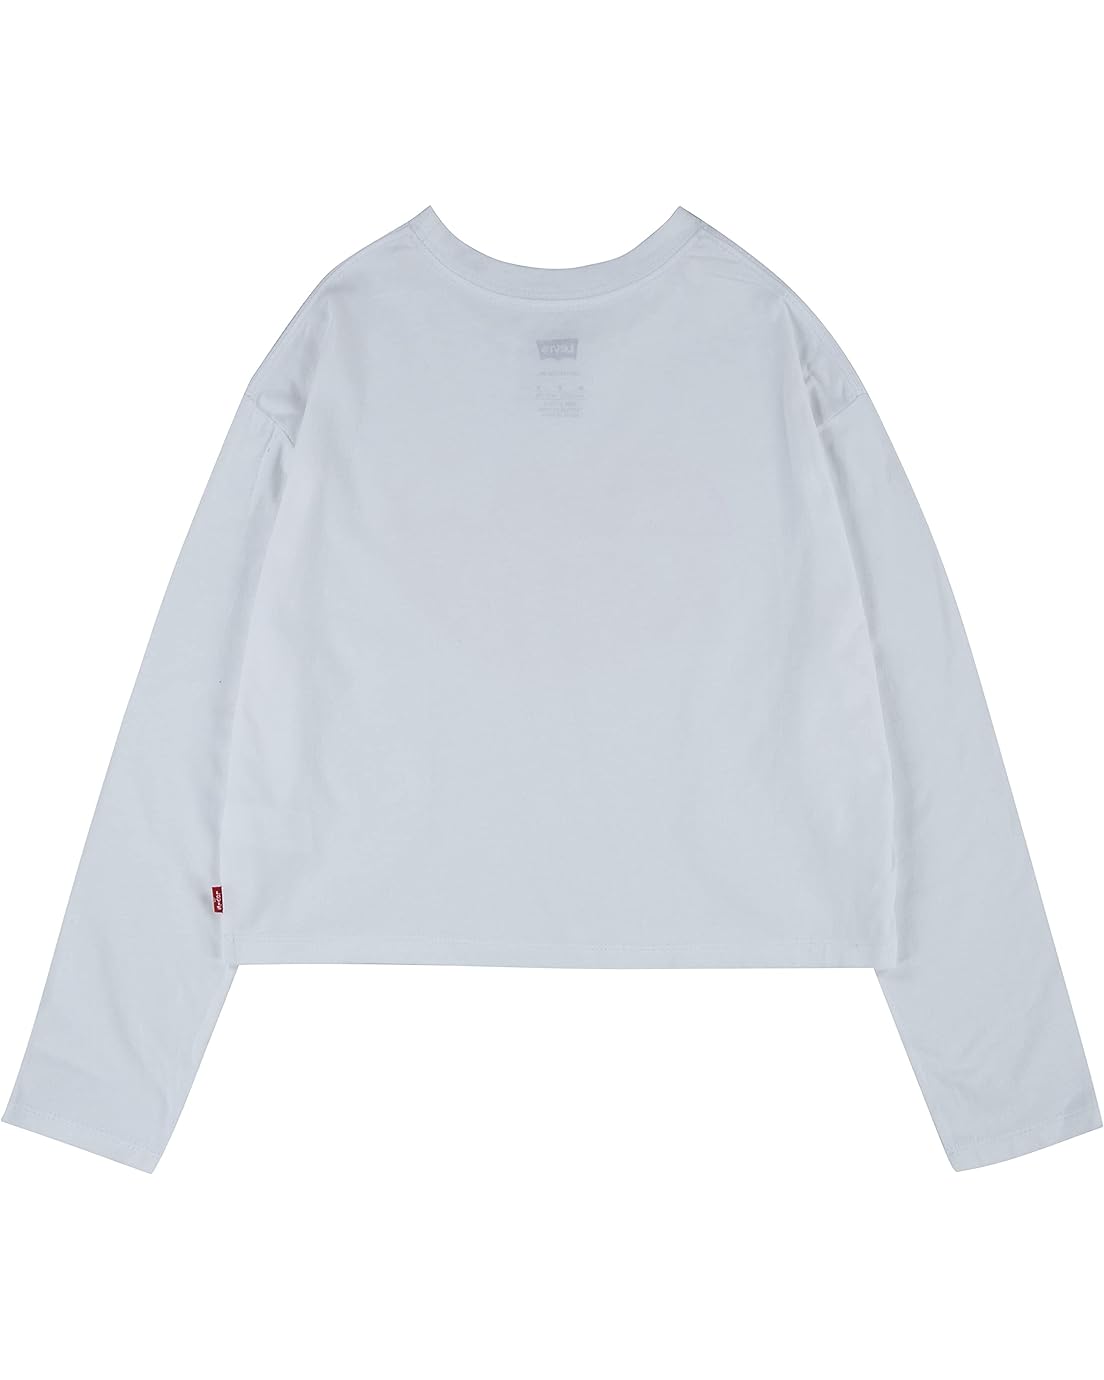 리바이스 Levis Kids Long Sleeve High-Rise Graphic T-Shirt (Little Kids)